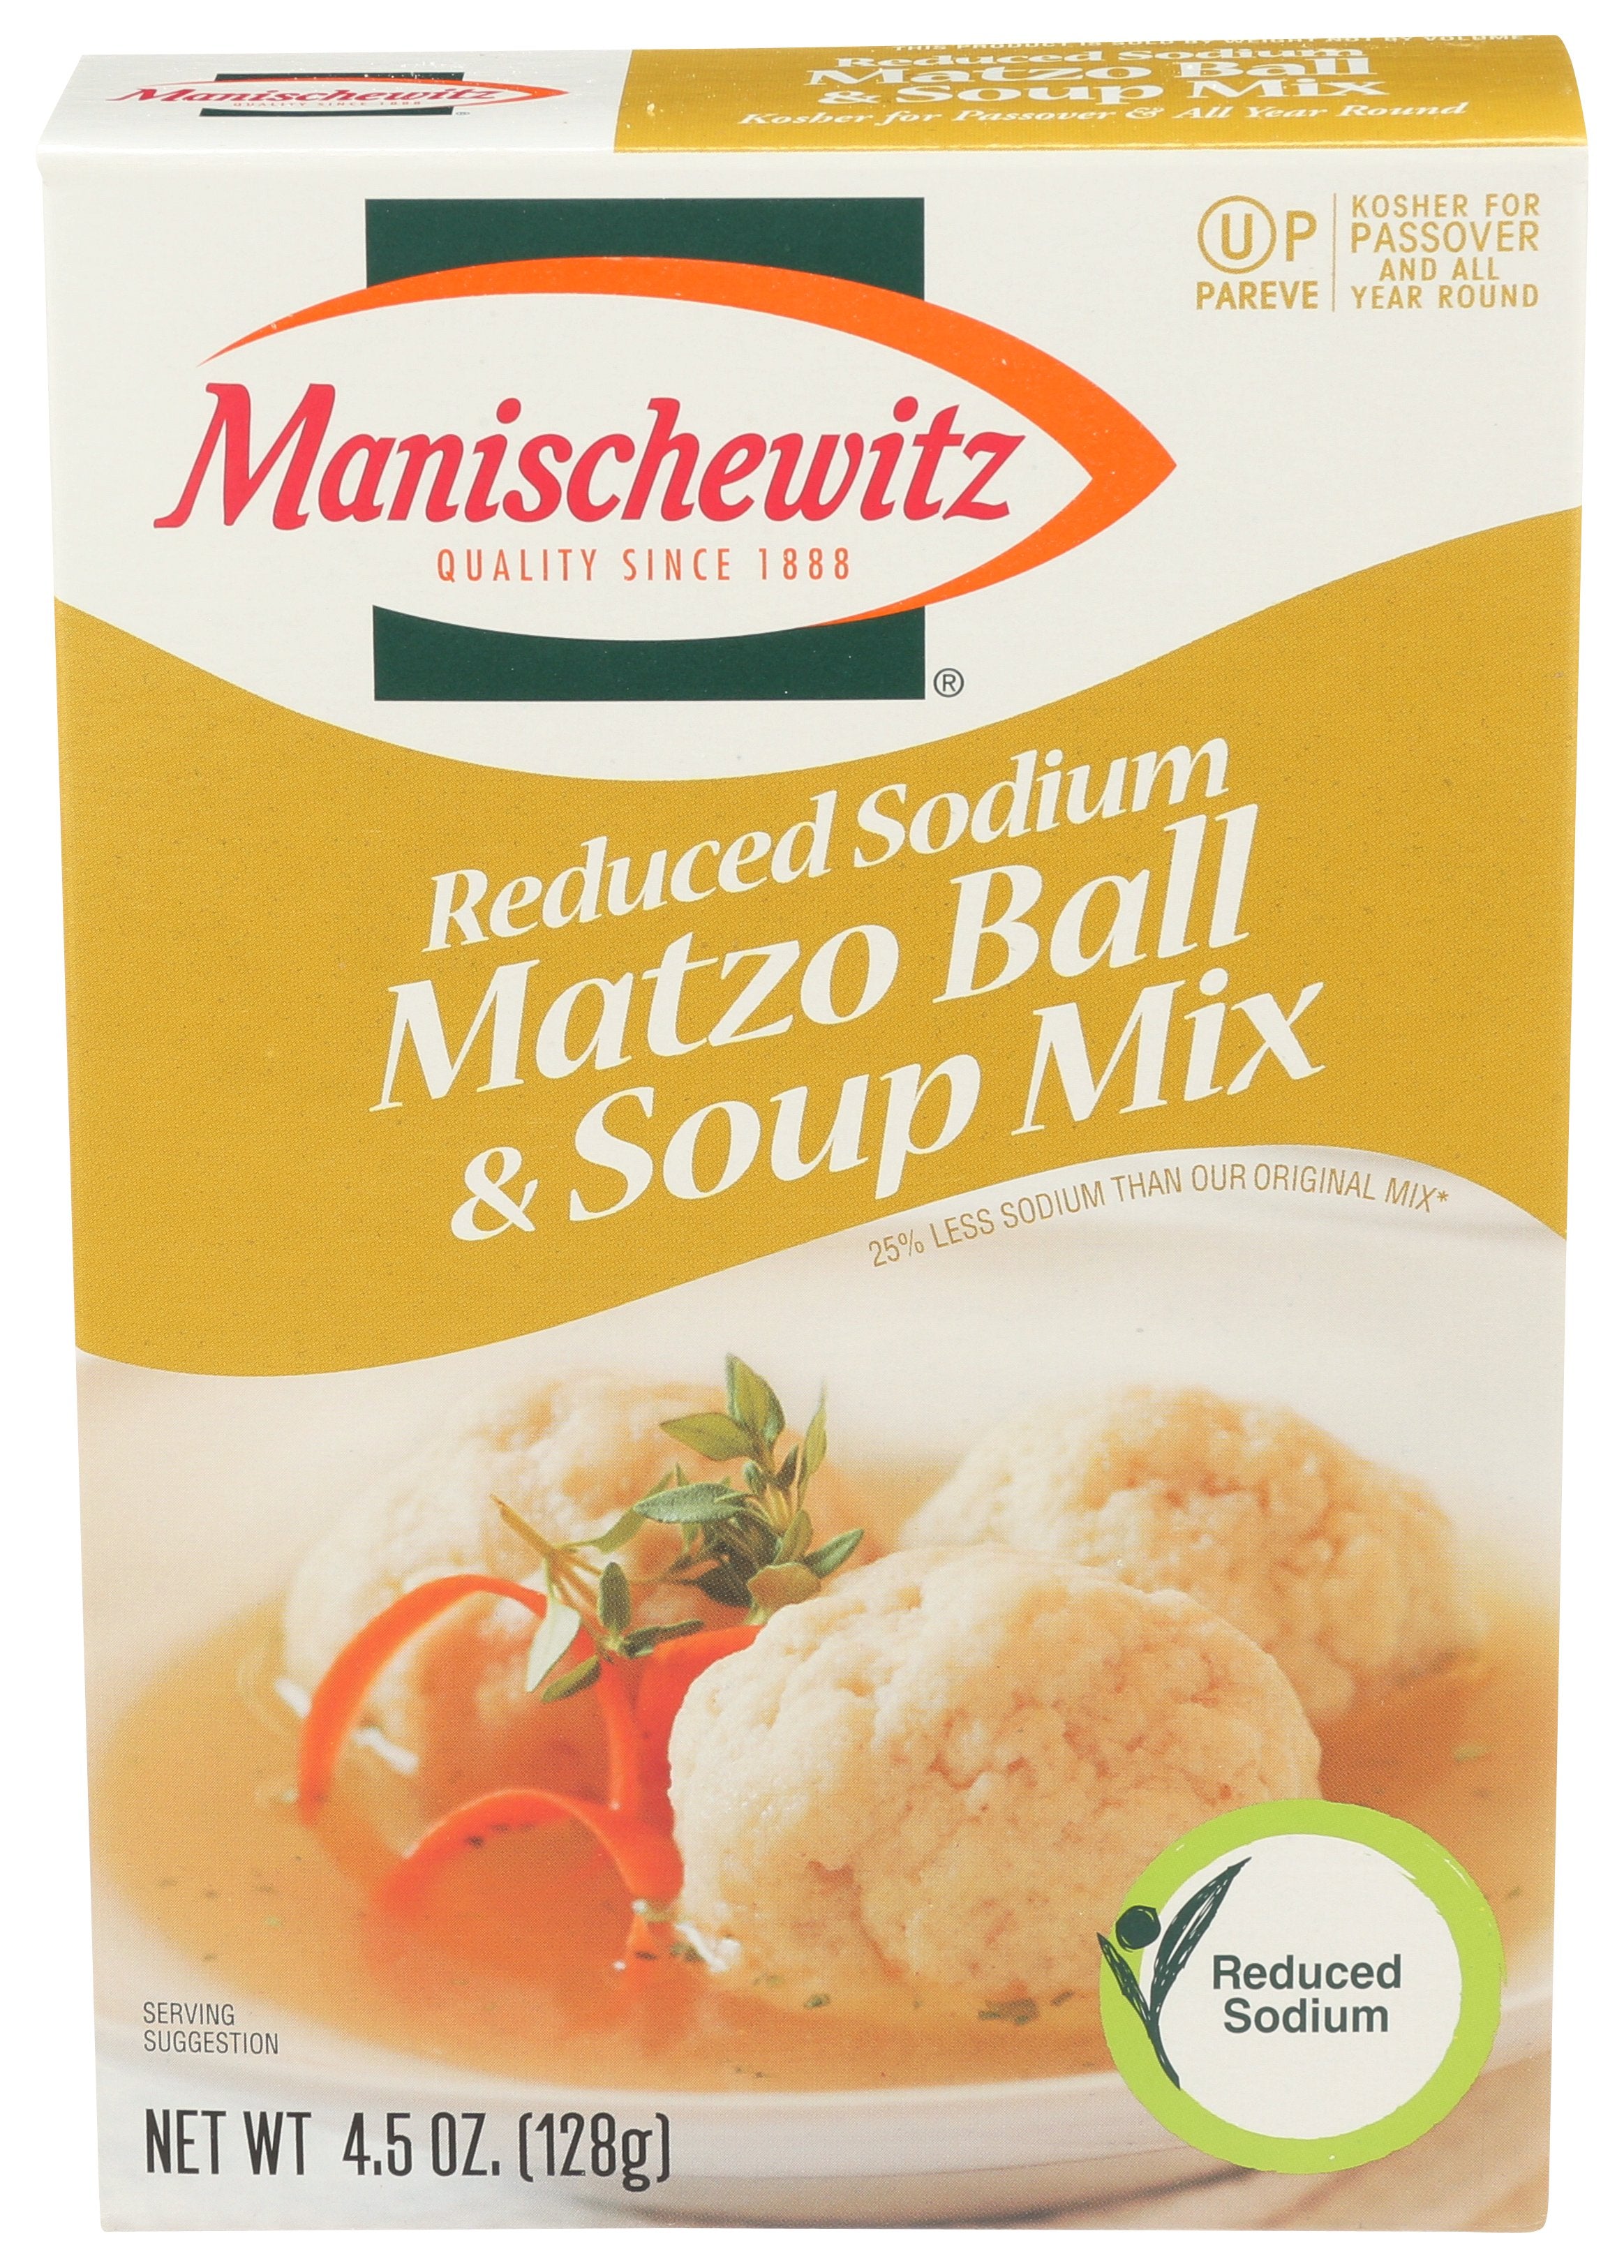 MANISCHEWITZ SOUP MIX MATZO BALL LS - Case of 12